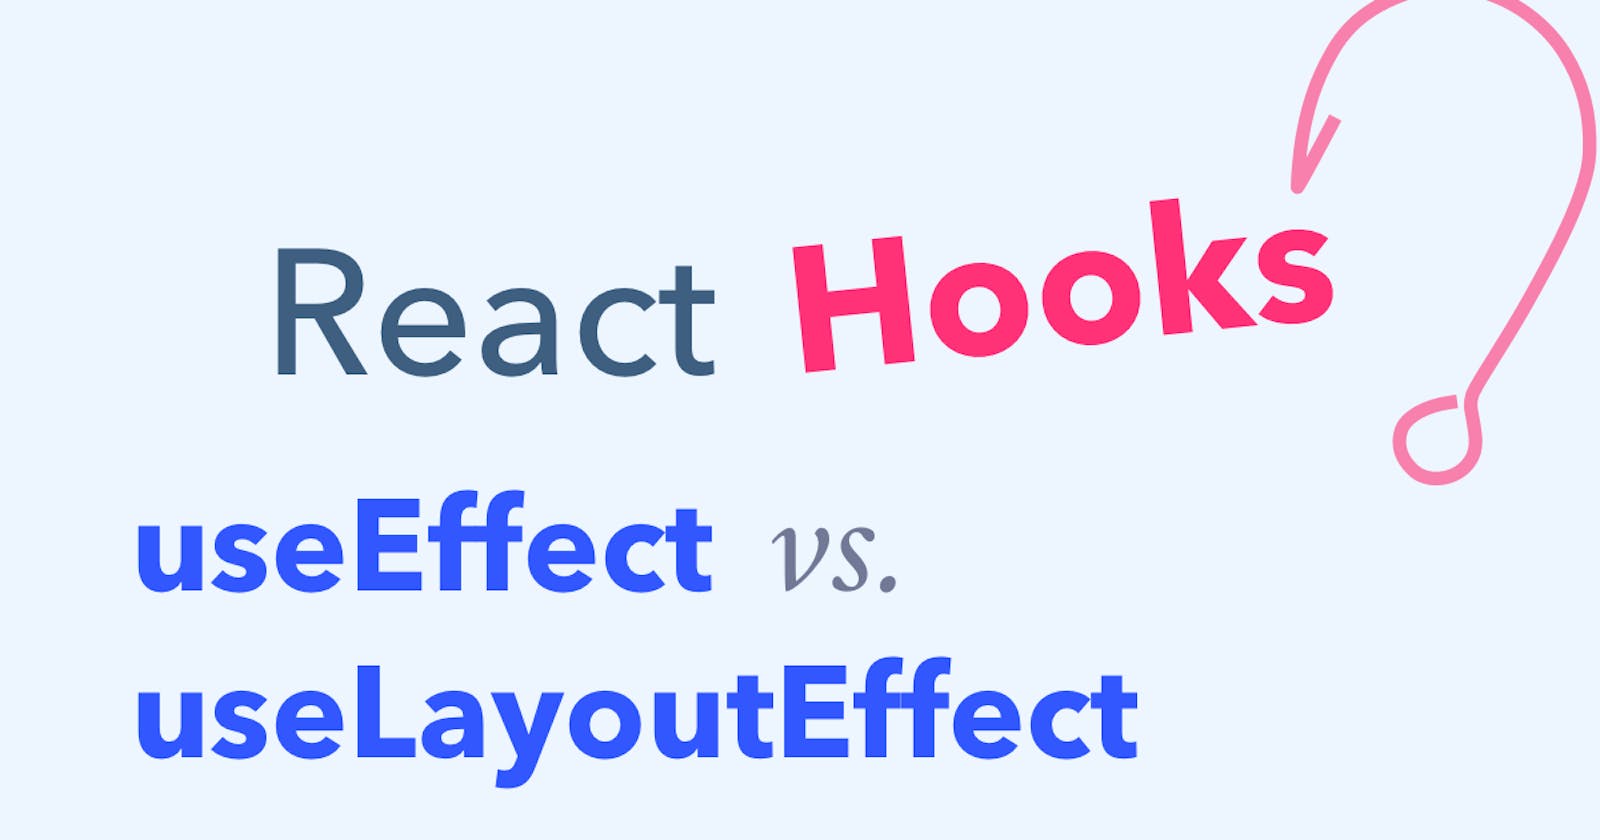 useEffect vs. useLayoutEffect